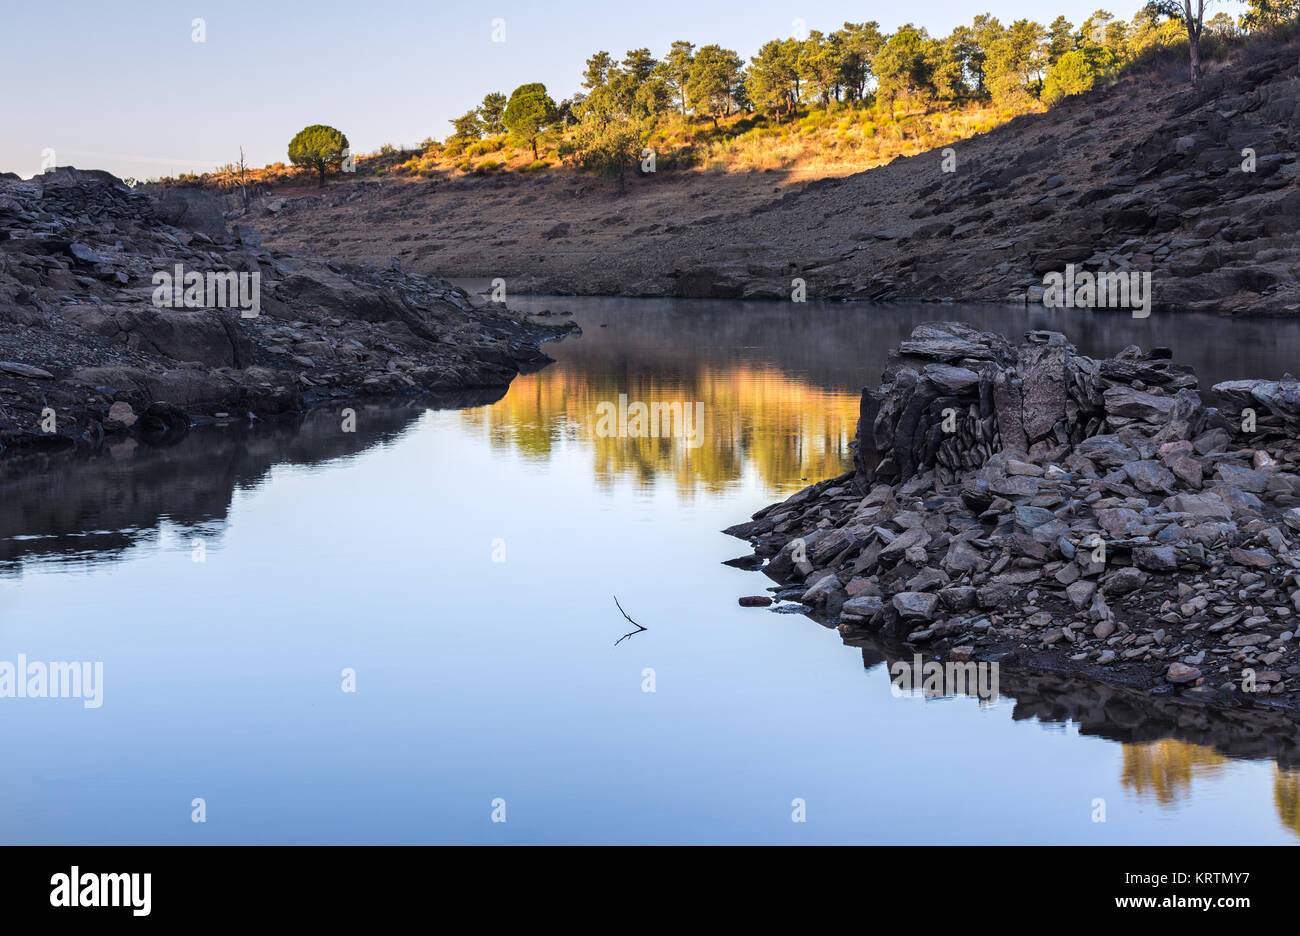 Landscape in the area of Granadilla. Extremadura, Spain. Stock Photo